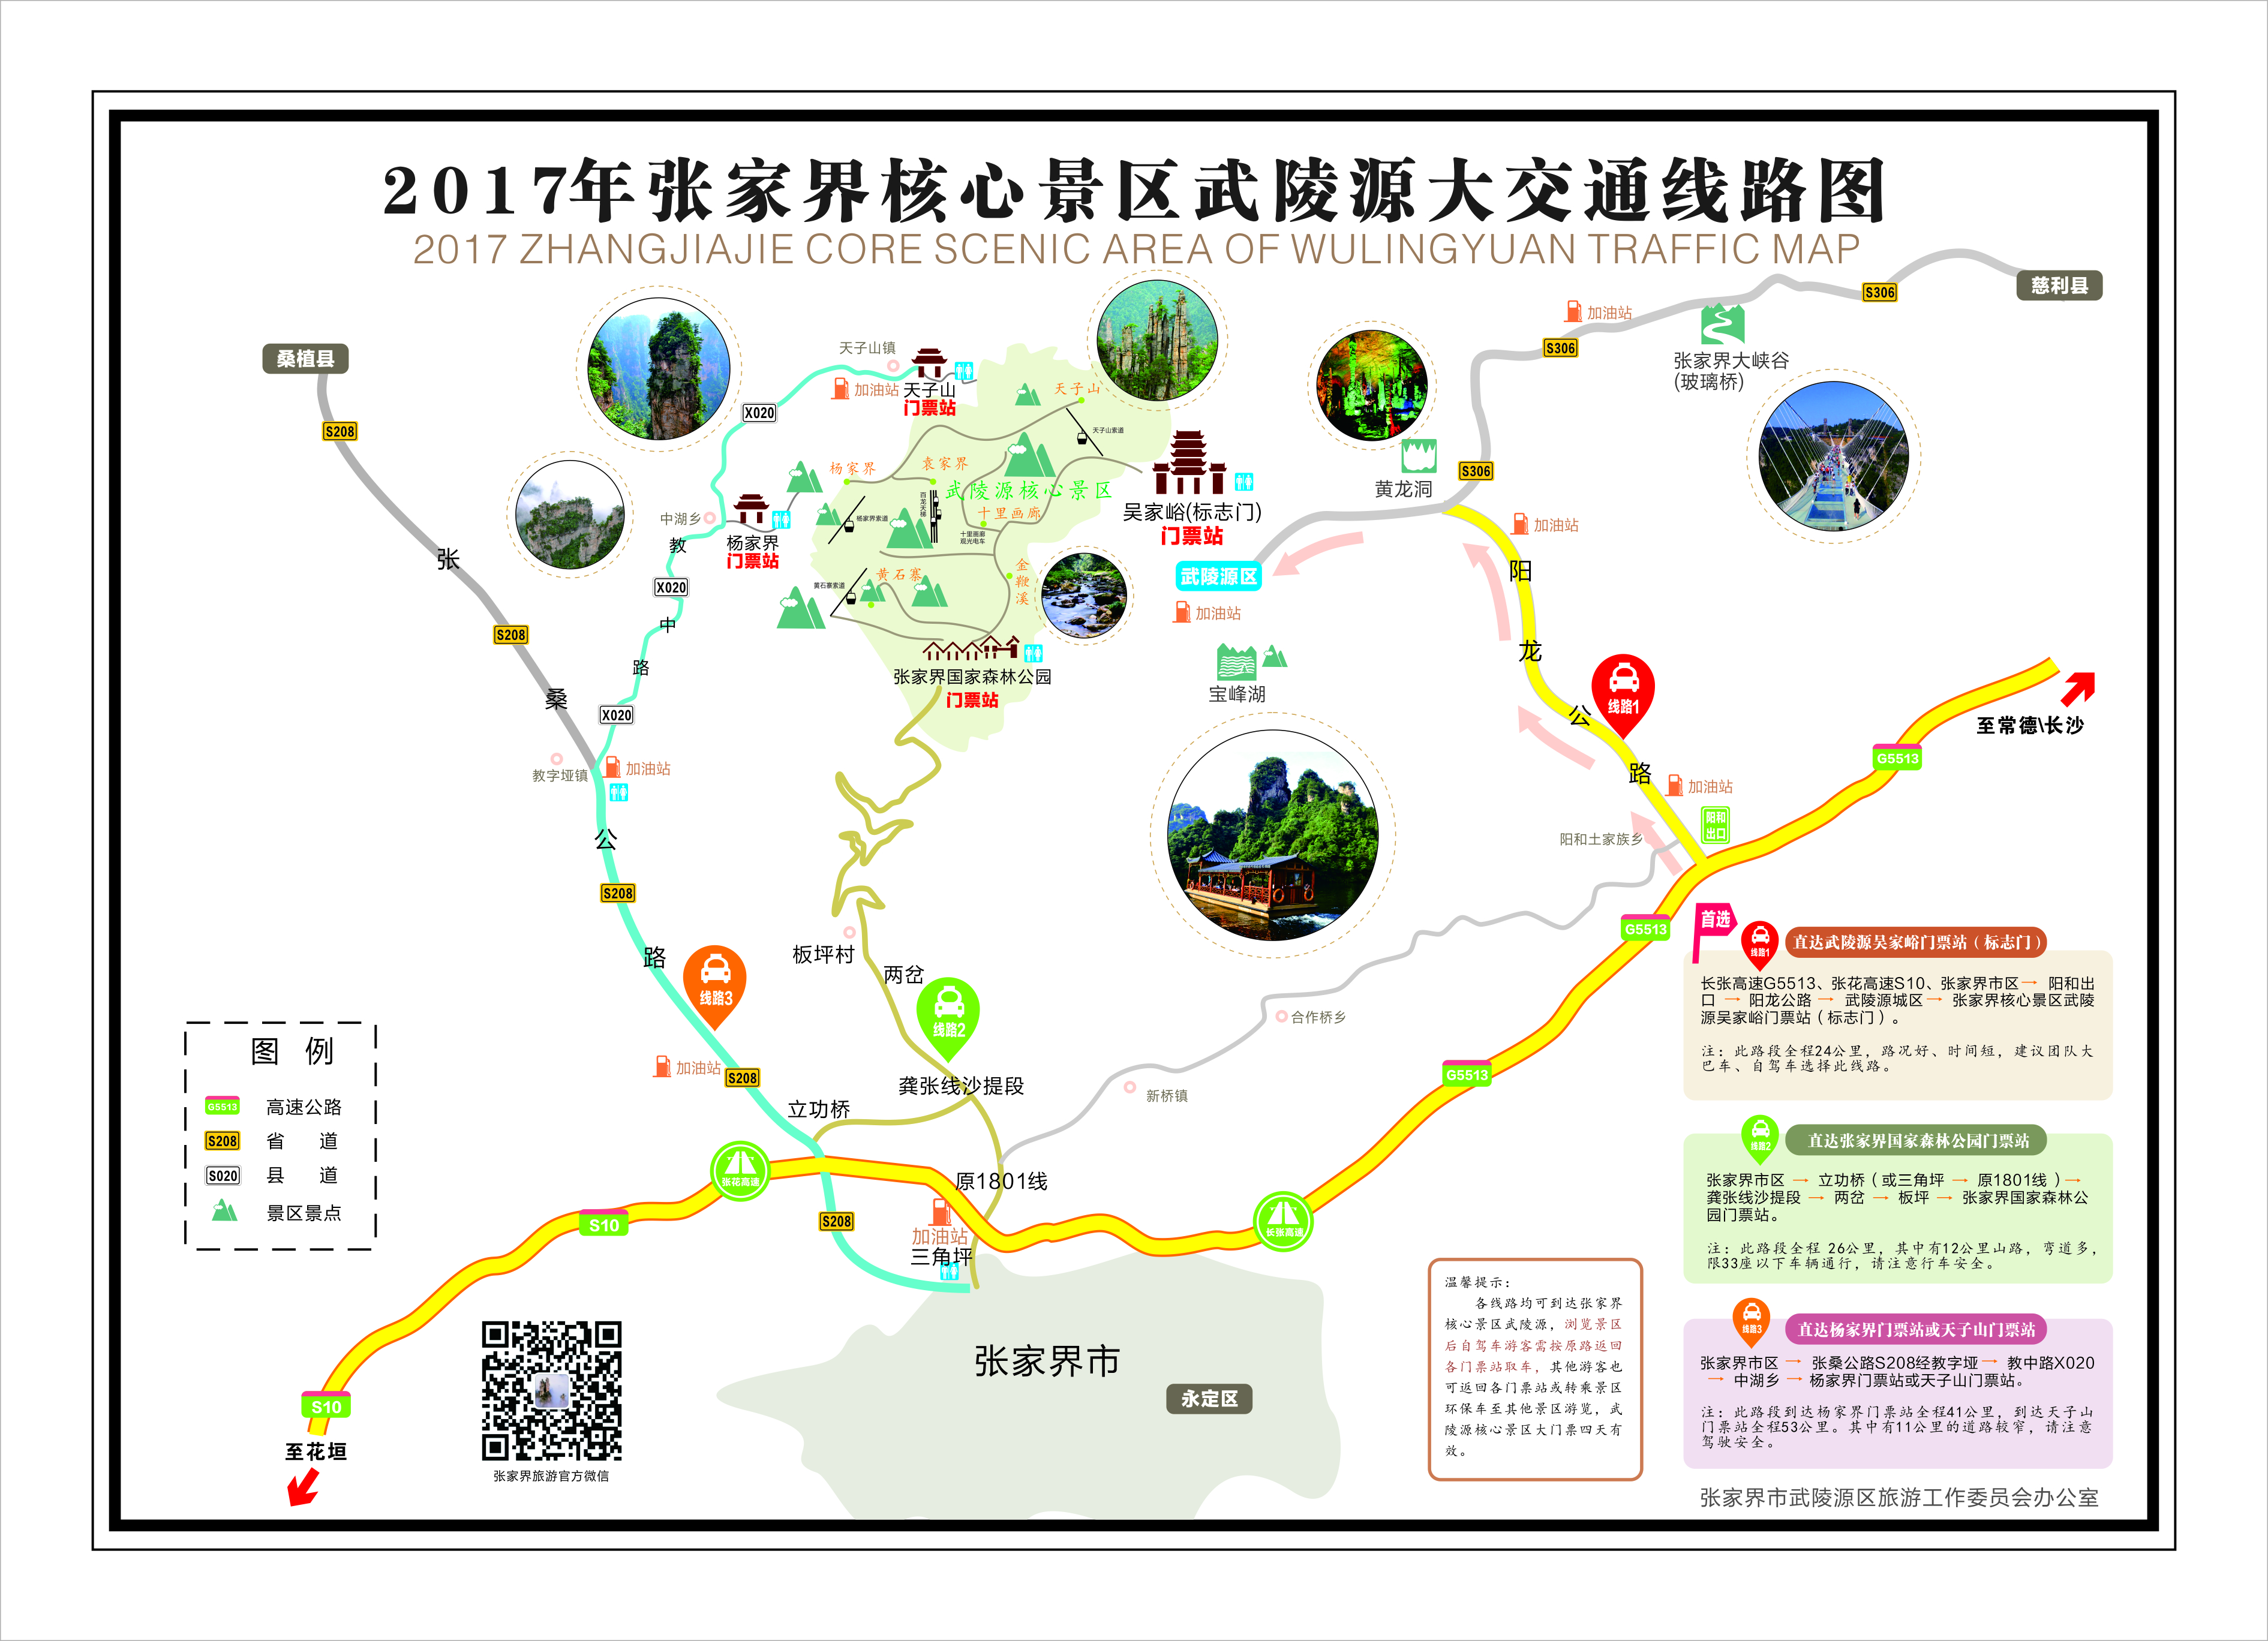 2017年张家界核心景区武陵源大交通线路图